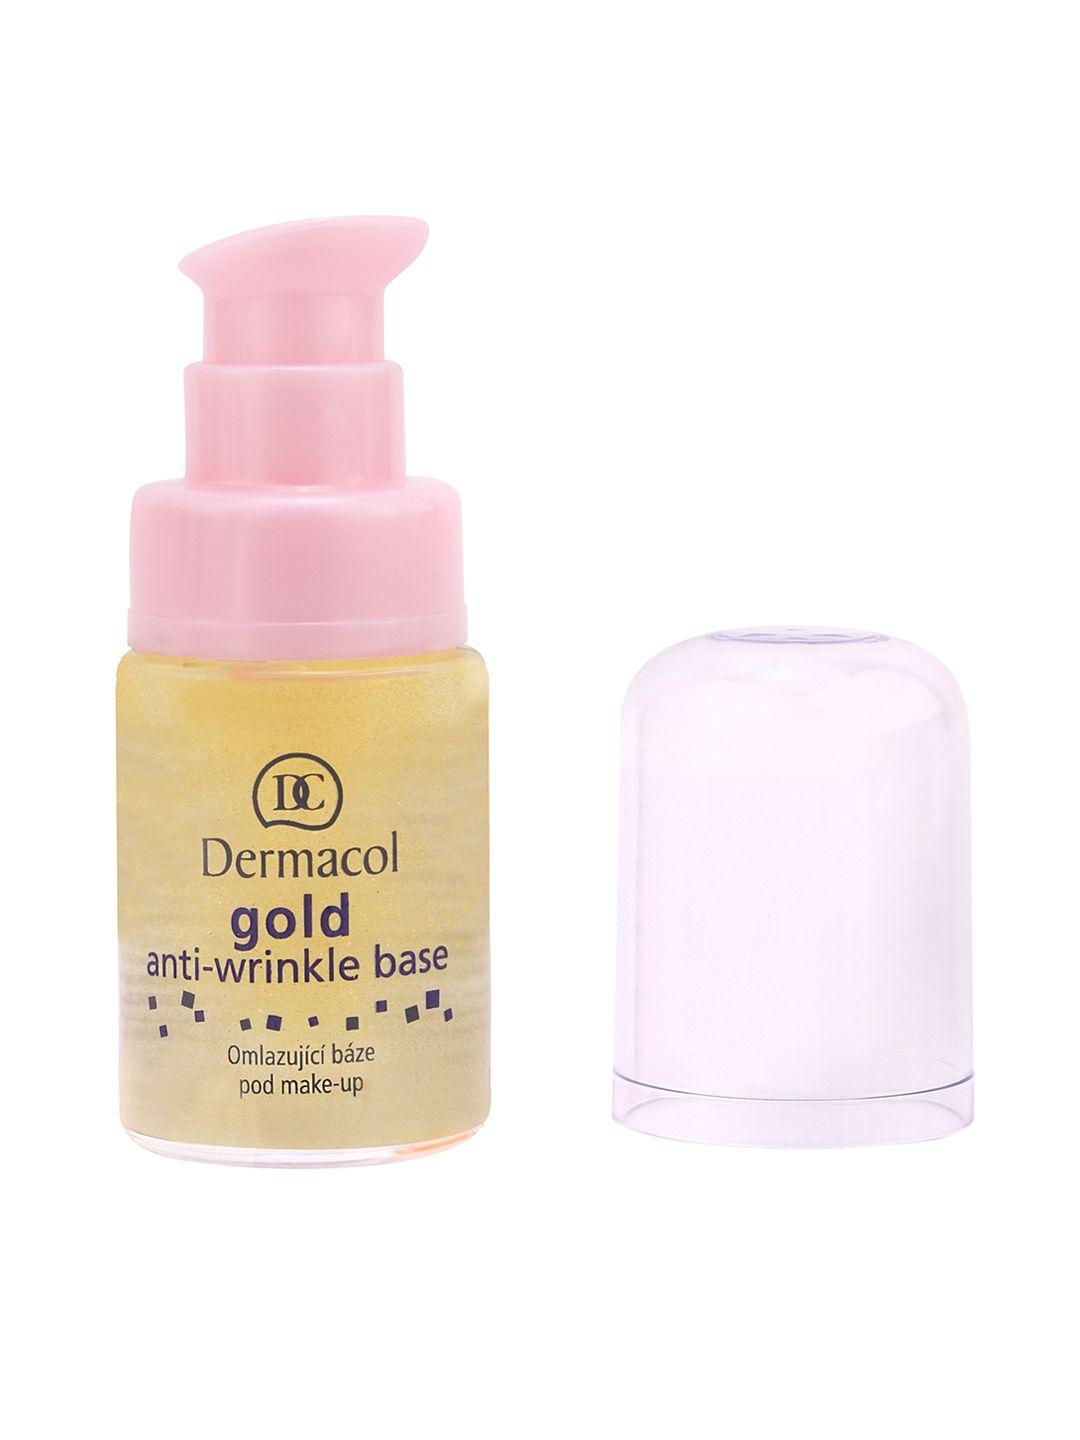 dermacol gold anti-wrinkle make-up base primer 1409a 15 ml